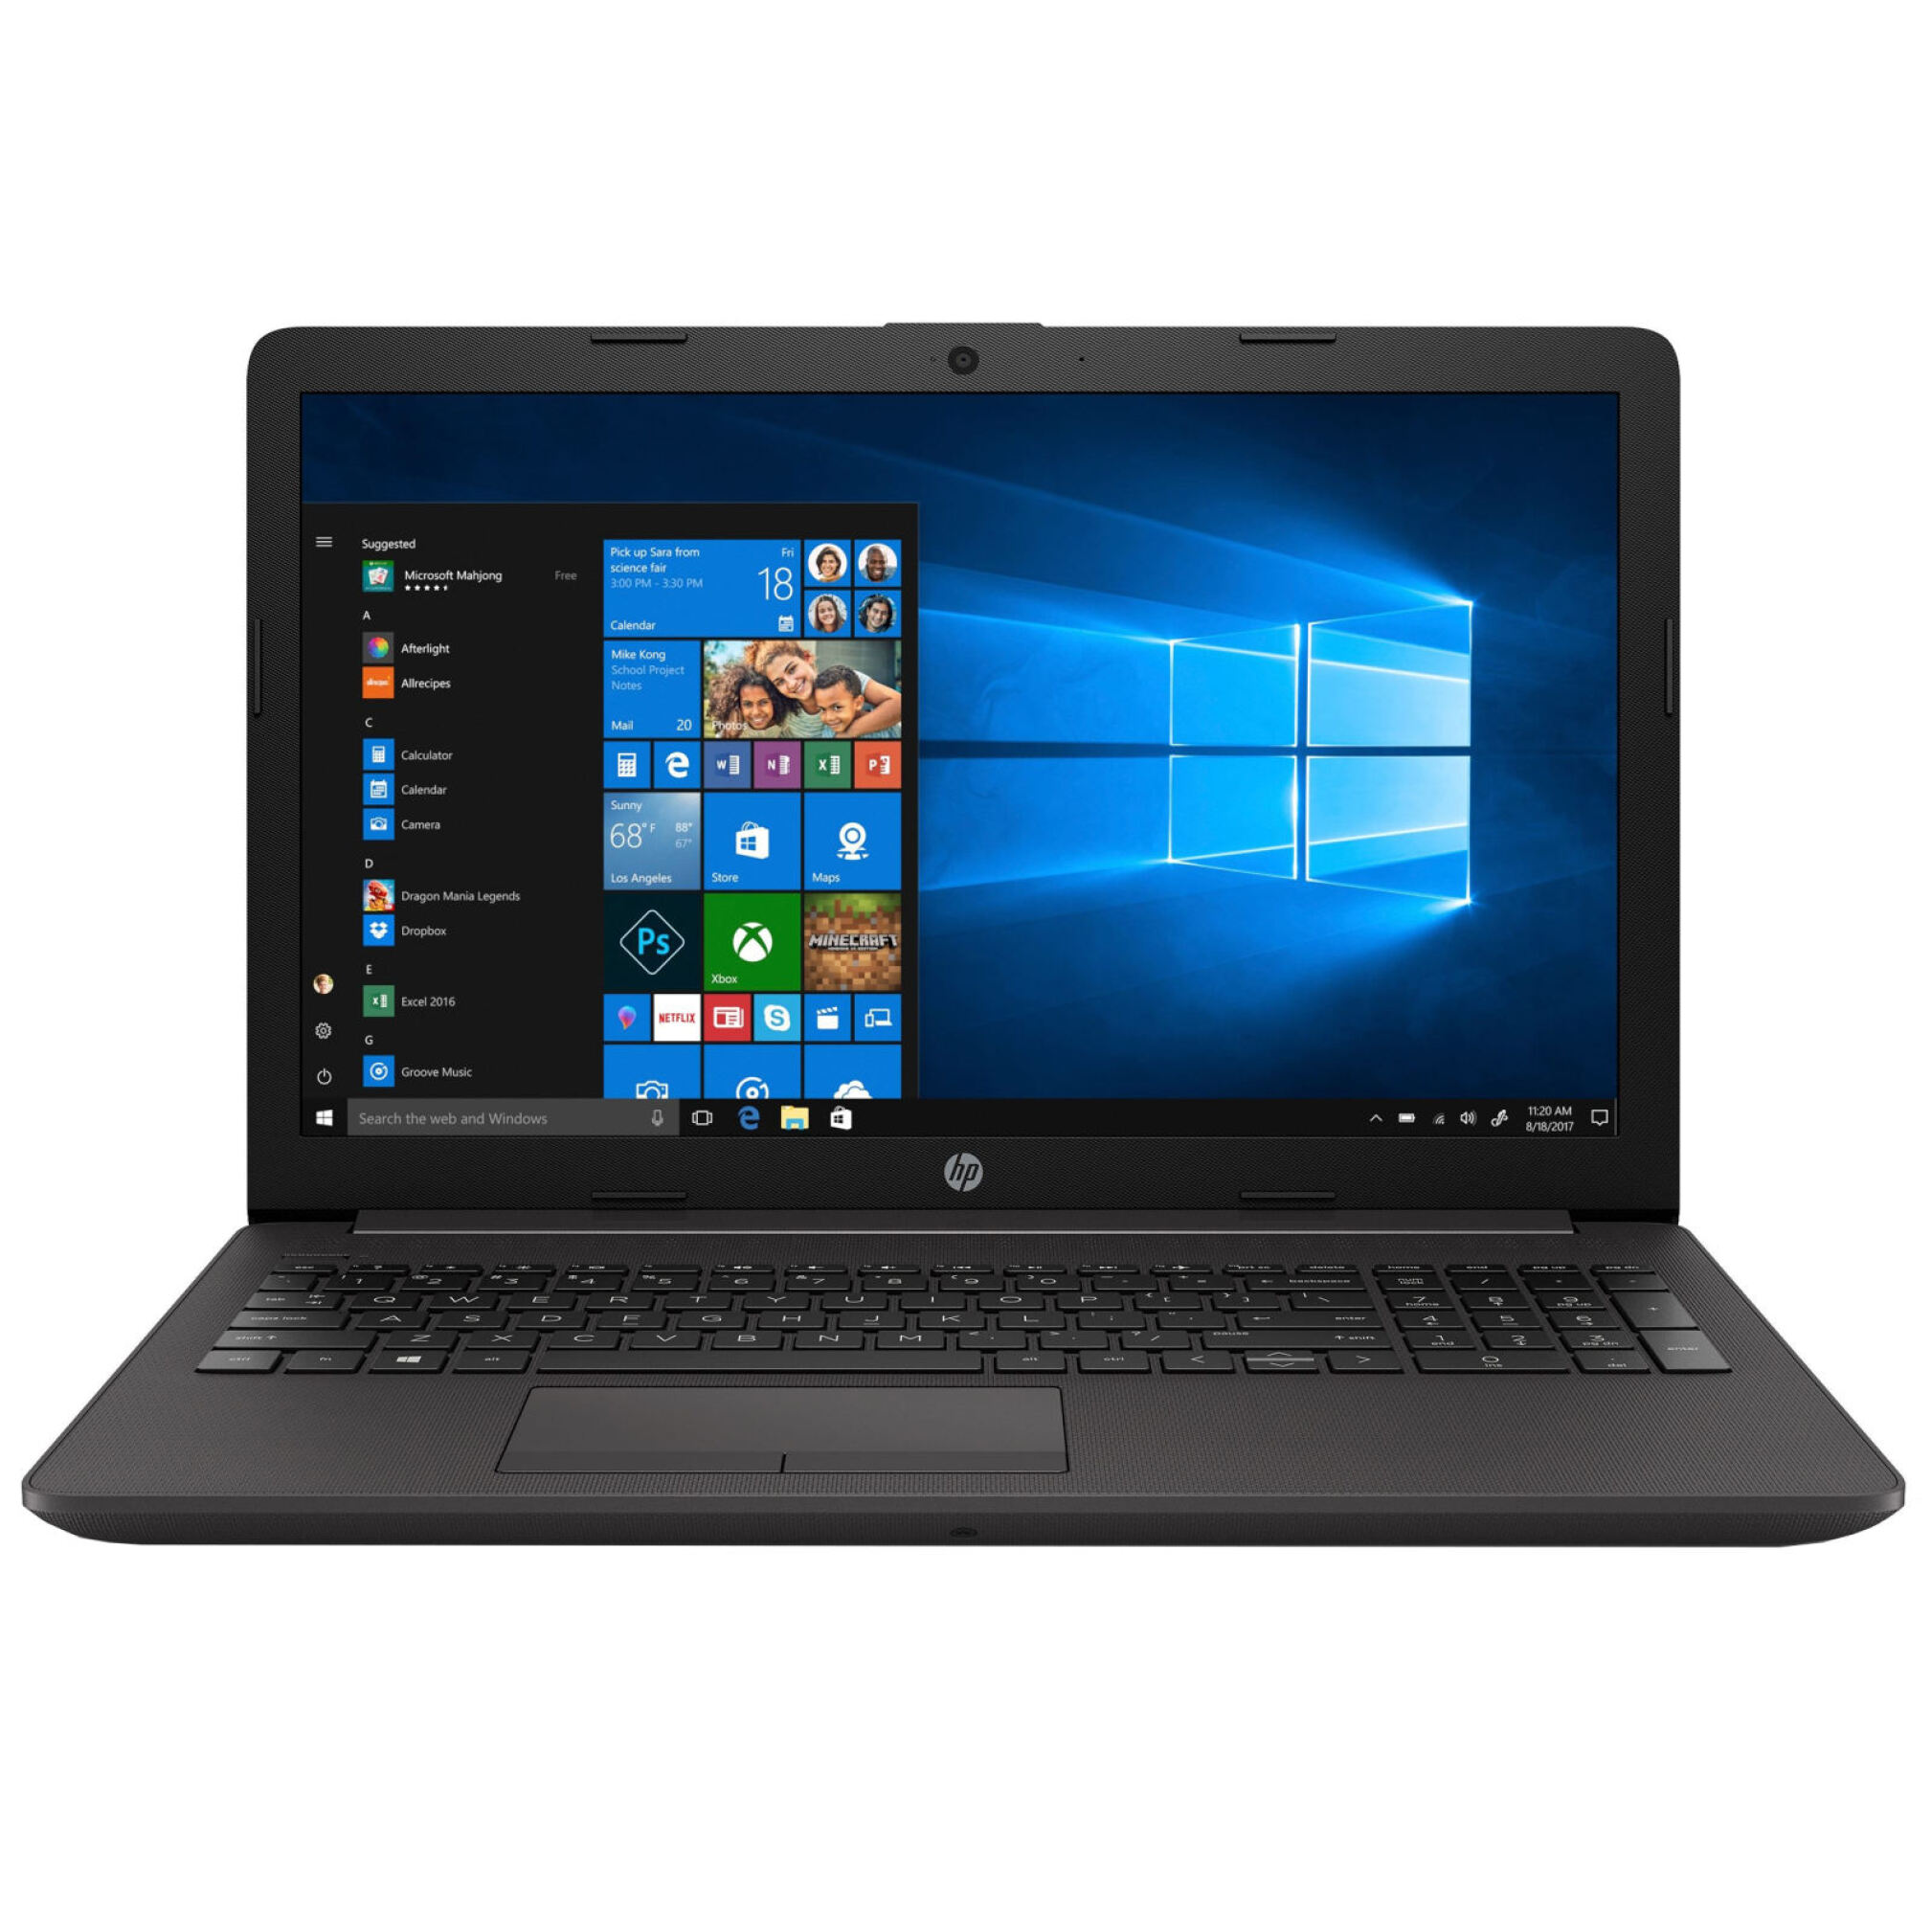  HP 250 G7 Notebook لپ تاپ اچ پی | لاکچری لپ تاپ 